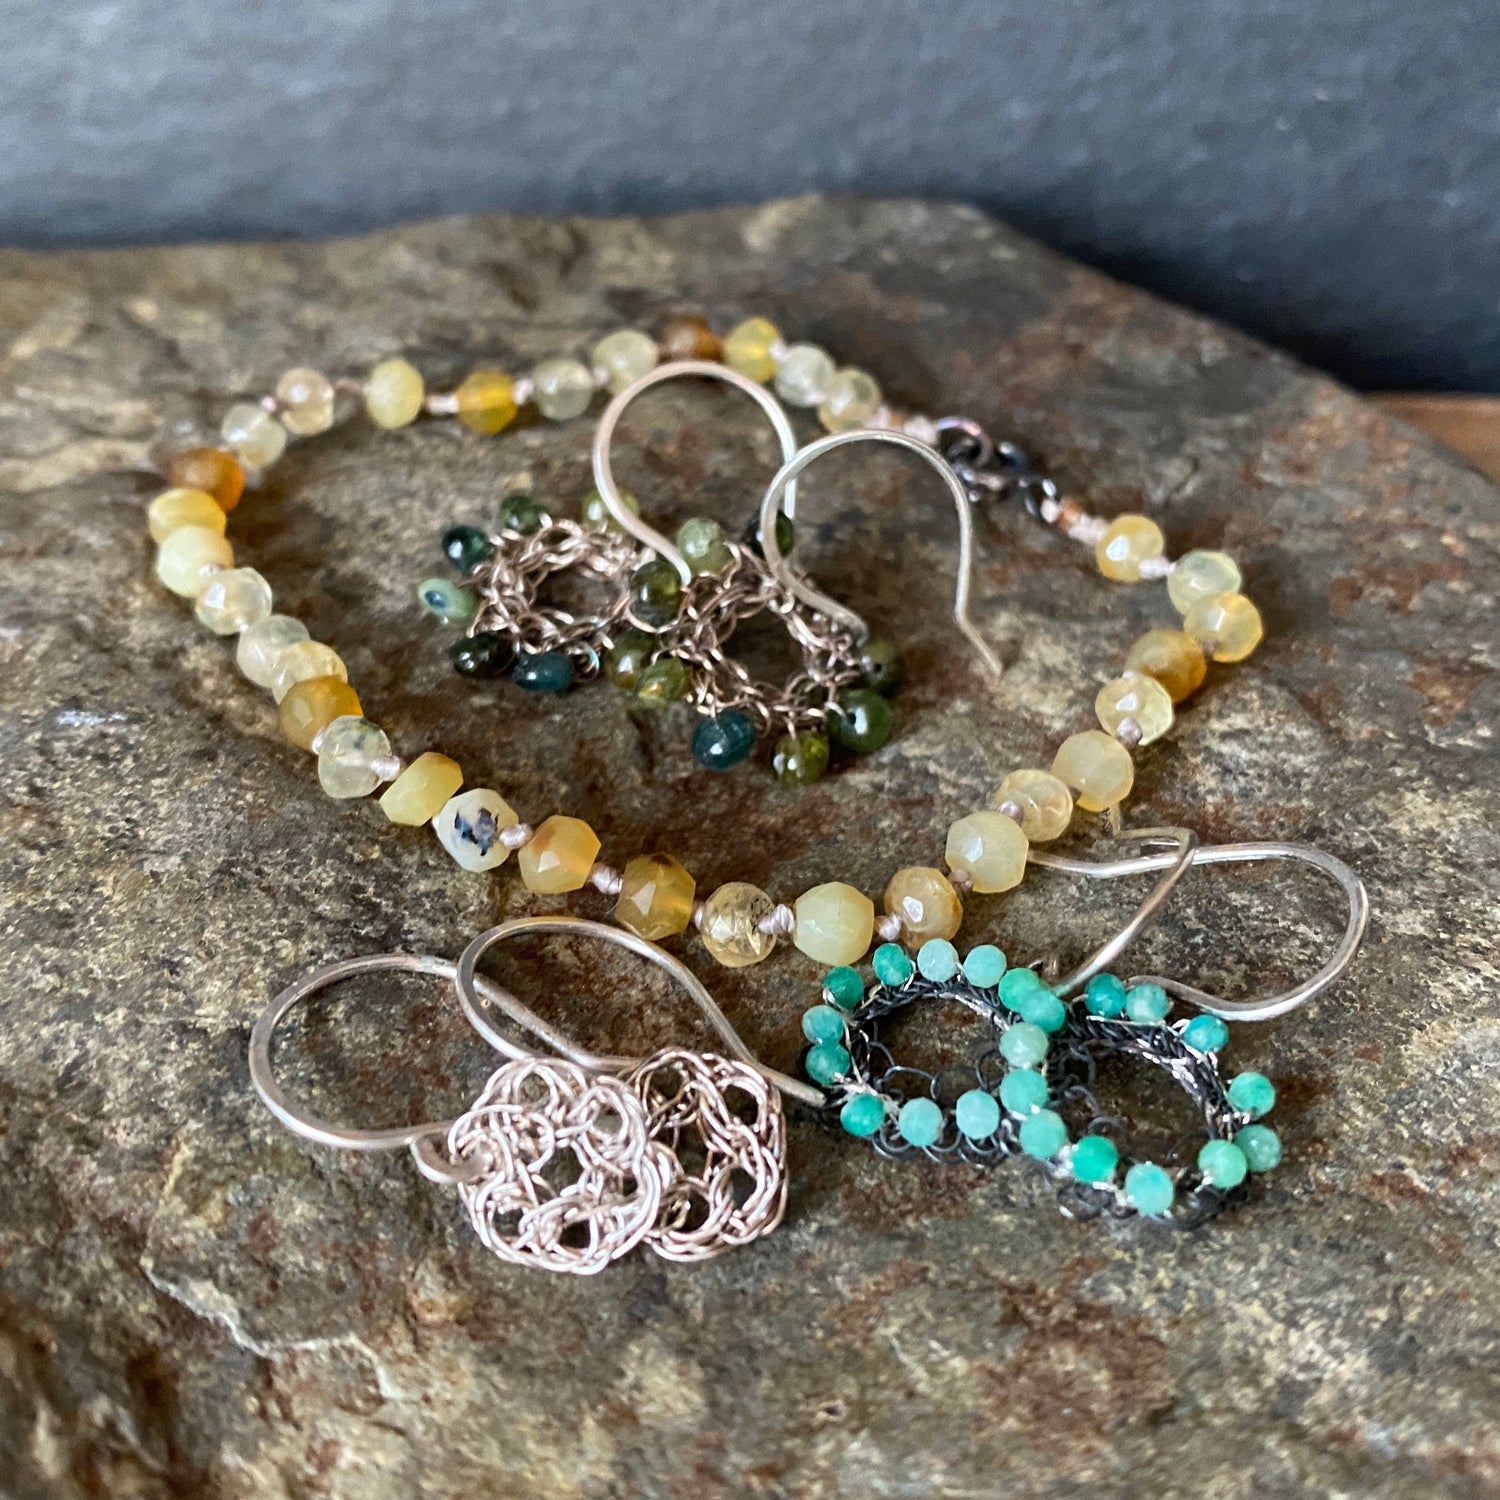 crochet silver earrings and woven bracelets 